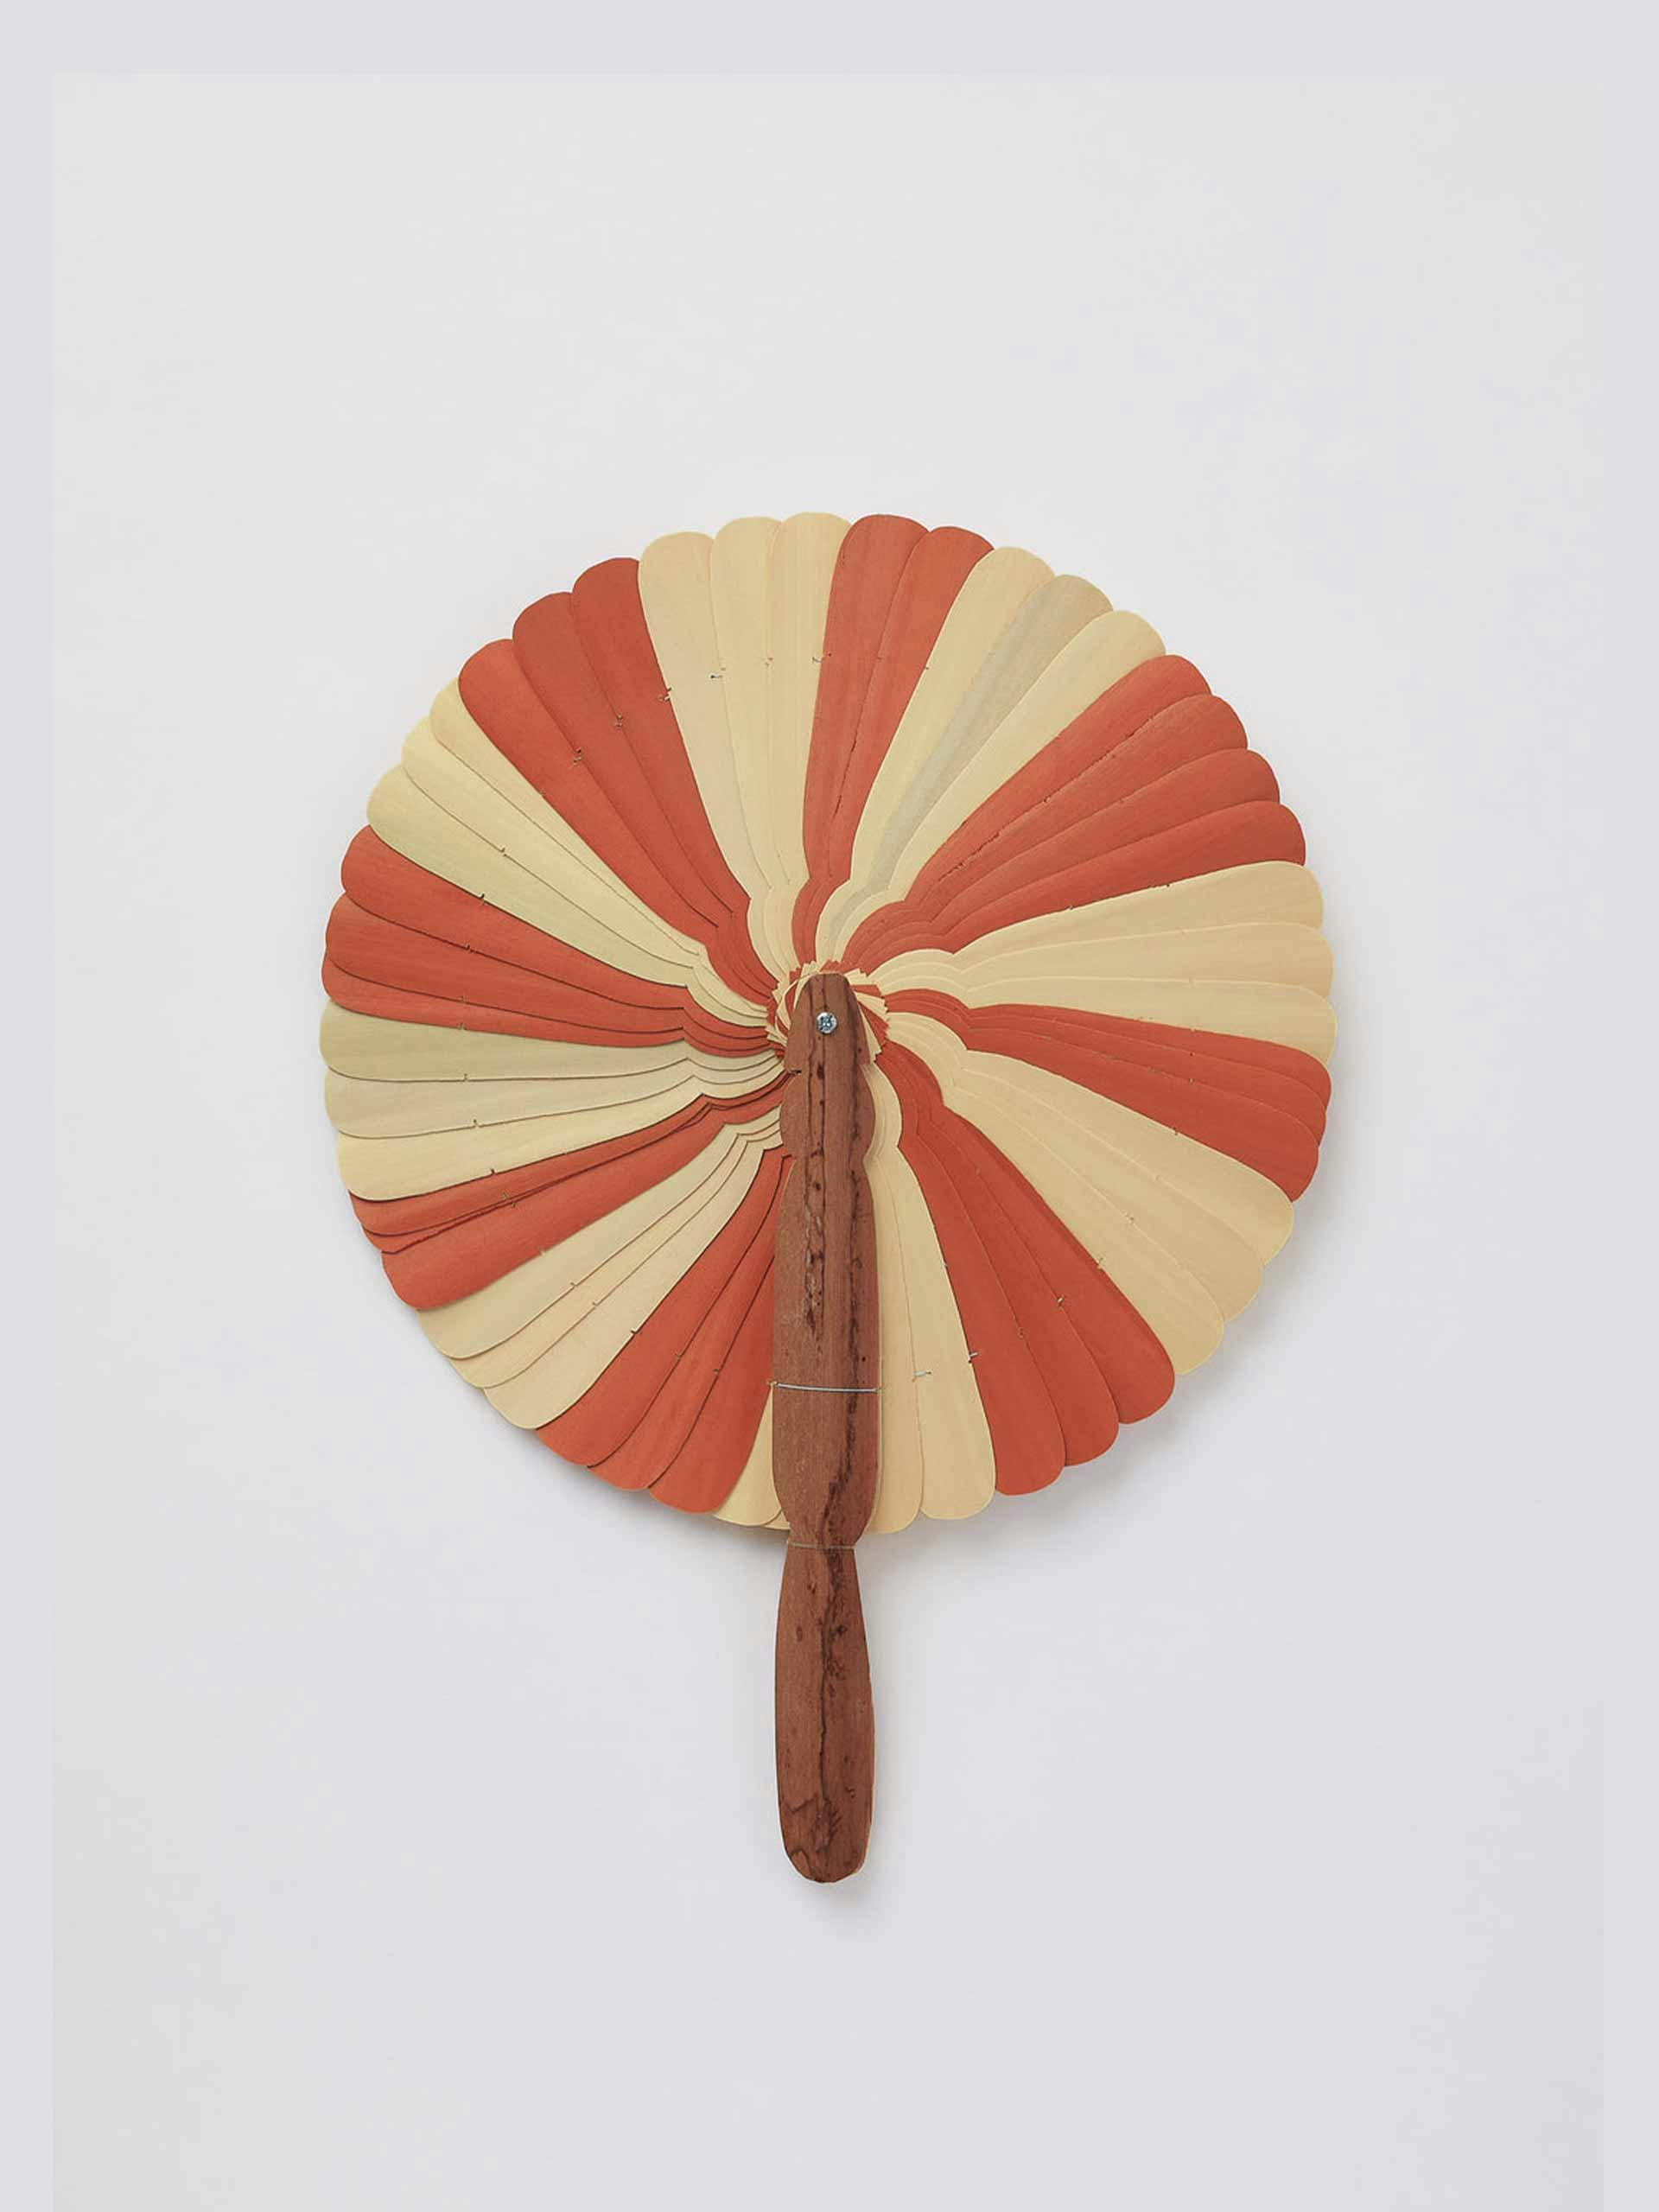 Burnt orange wooden fan